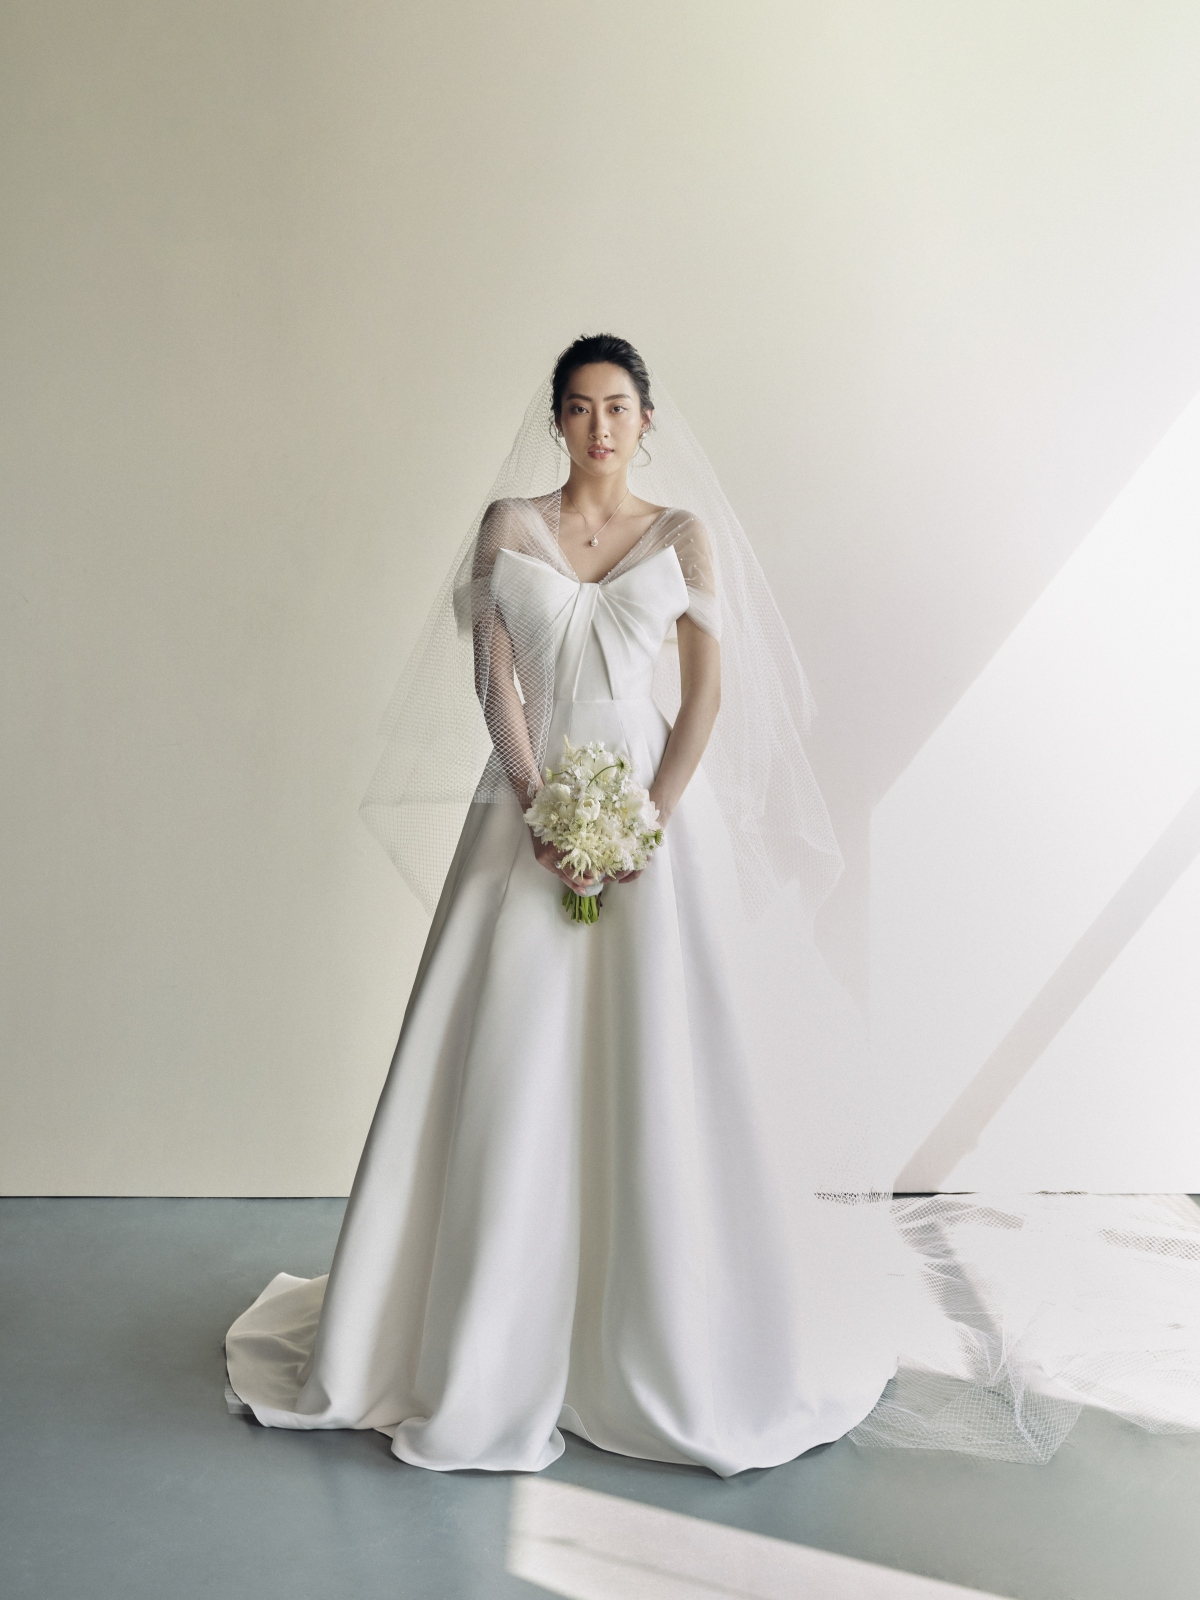 Hoa hậu Lương Thùy Linh làm cô dâu đẹp thanh khiết trong bộ ảnh mới - Ảnh 5.